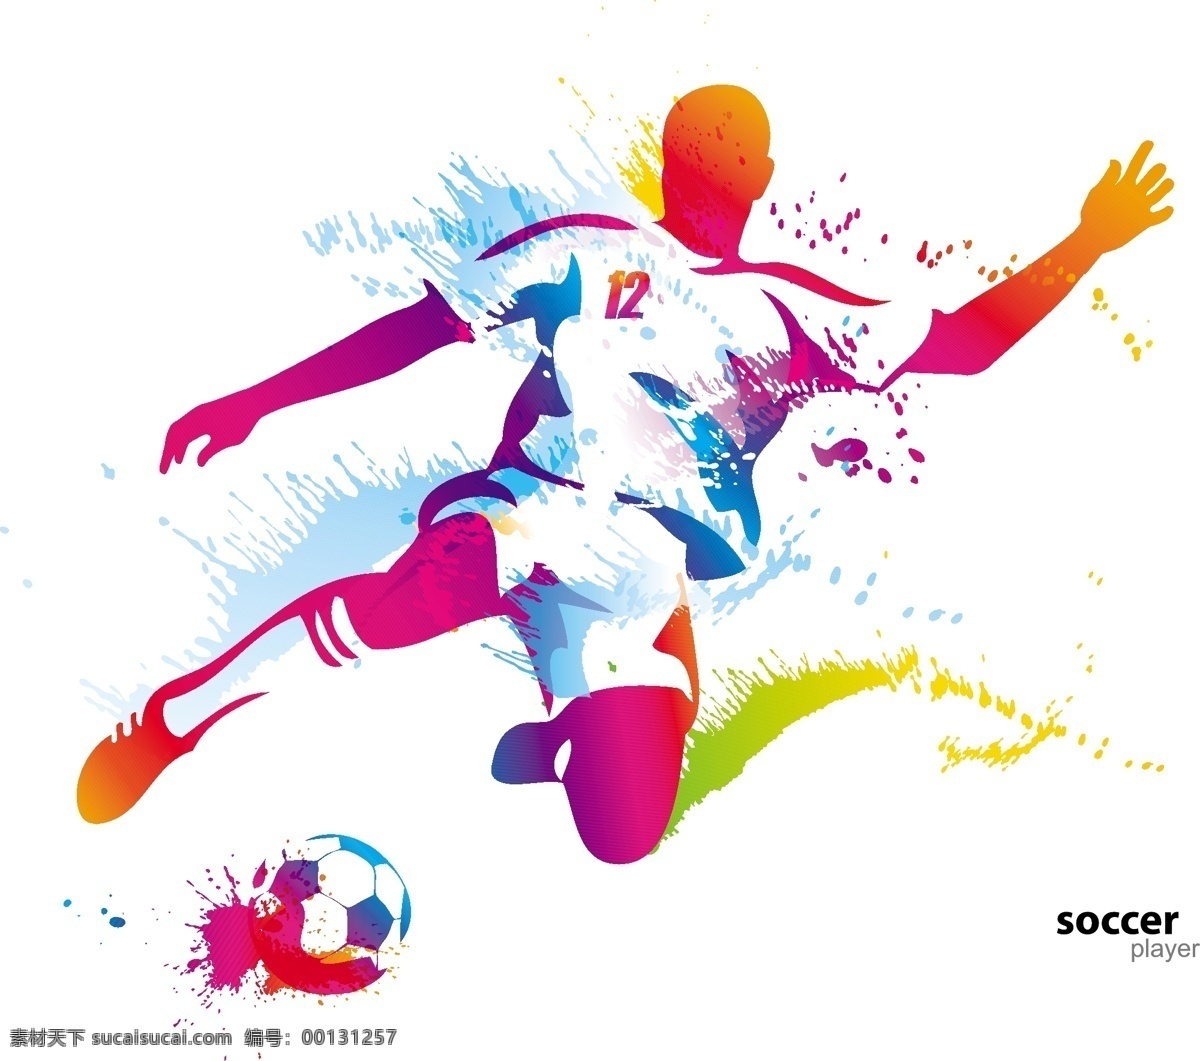 踢 足球 运动员 插画 矢量 模板下载 踢足球的人 男人 球类运动 体育运动 生活百科 矢量素材 白色